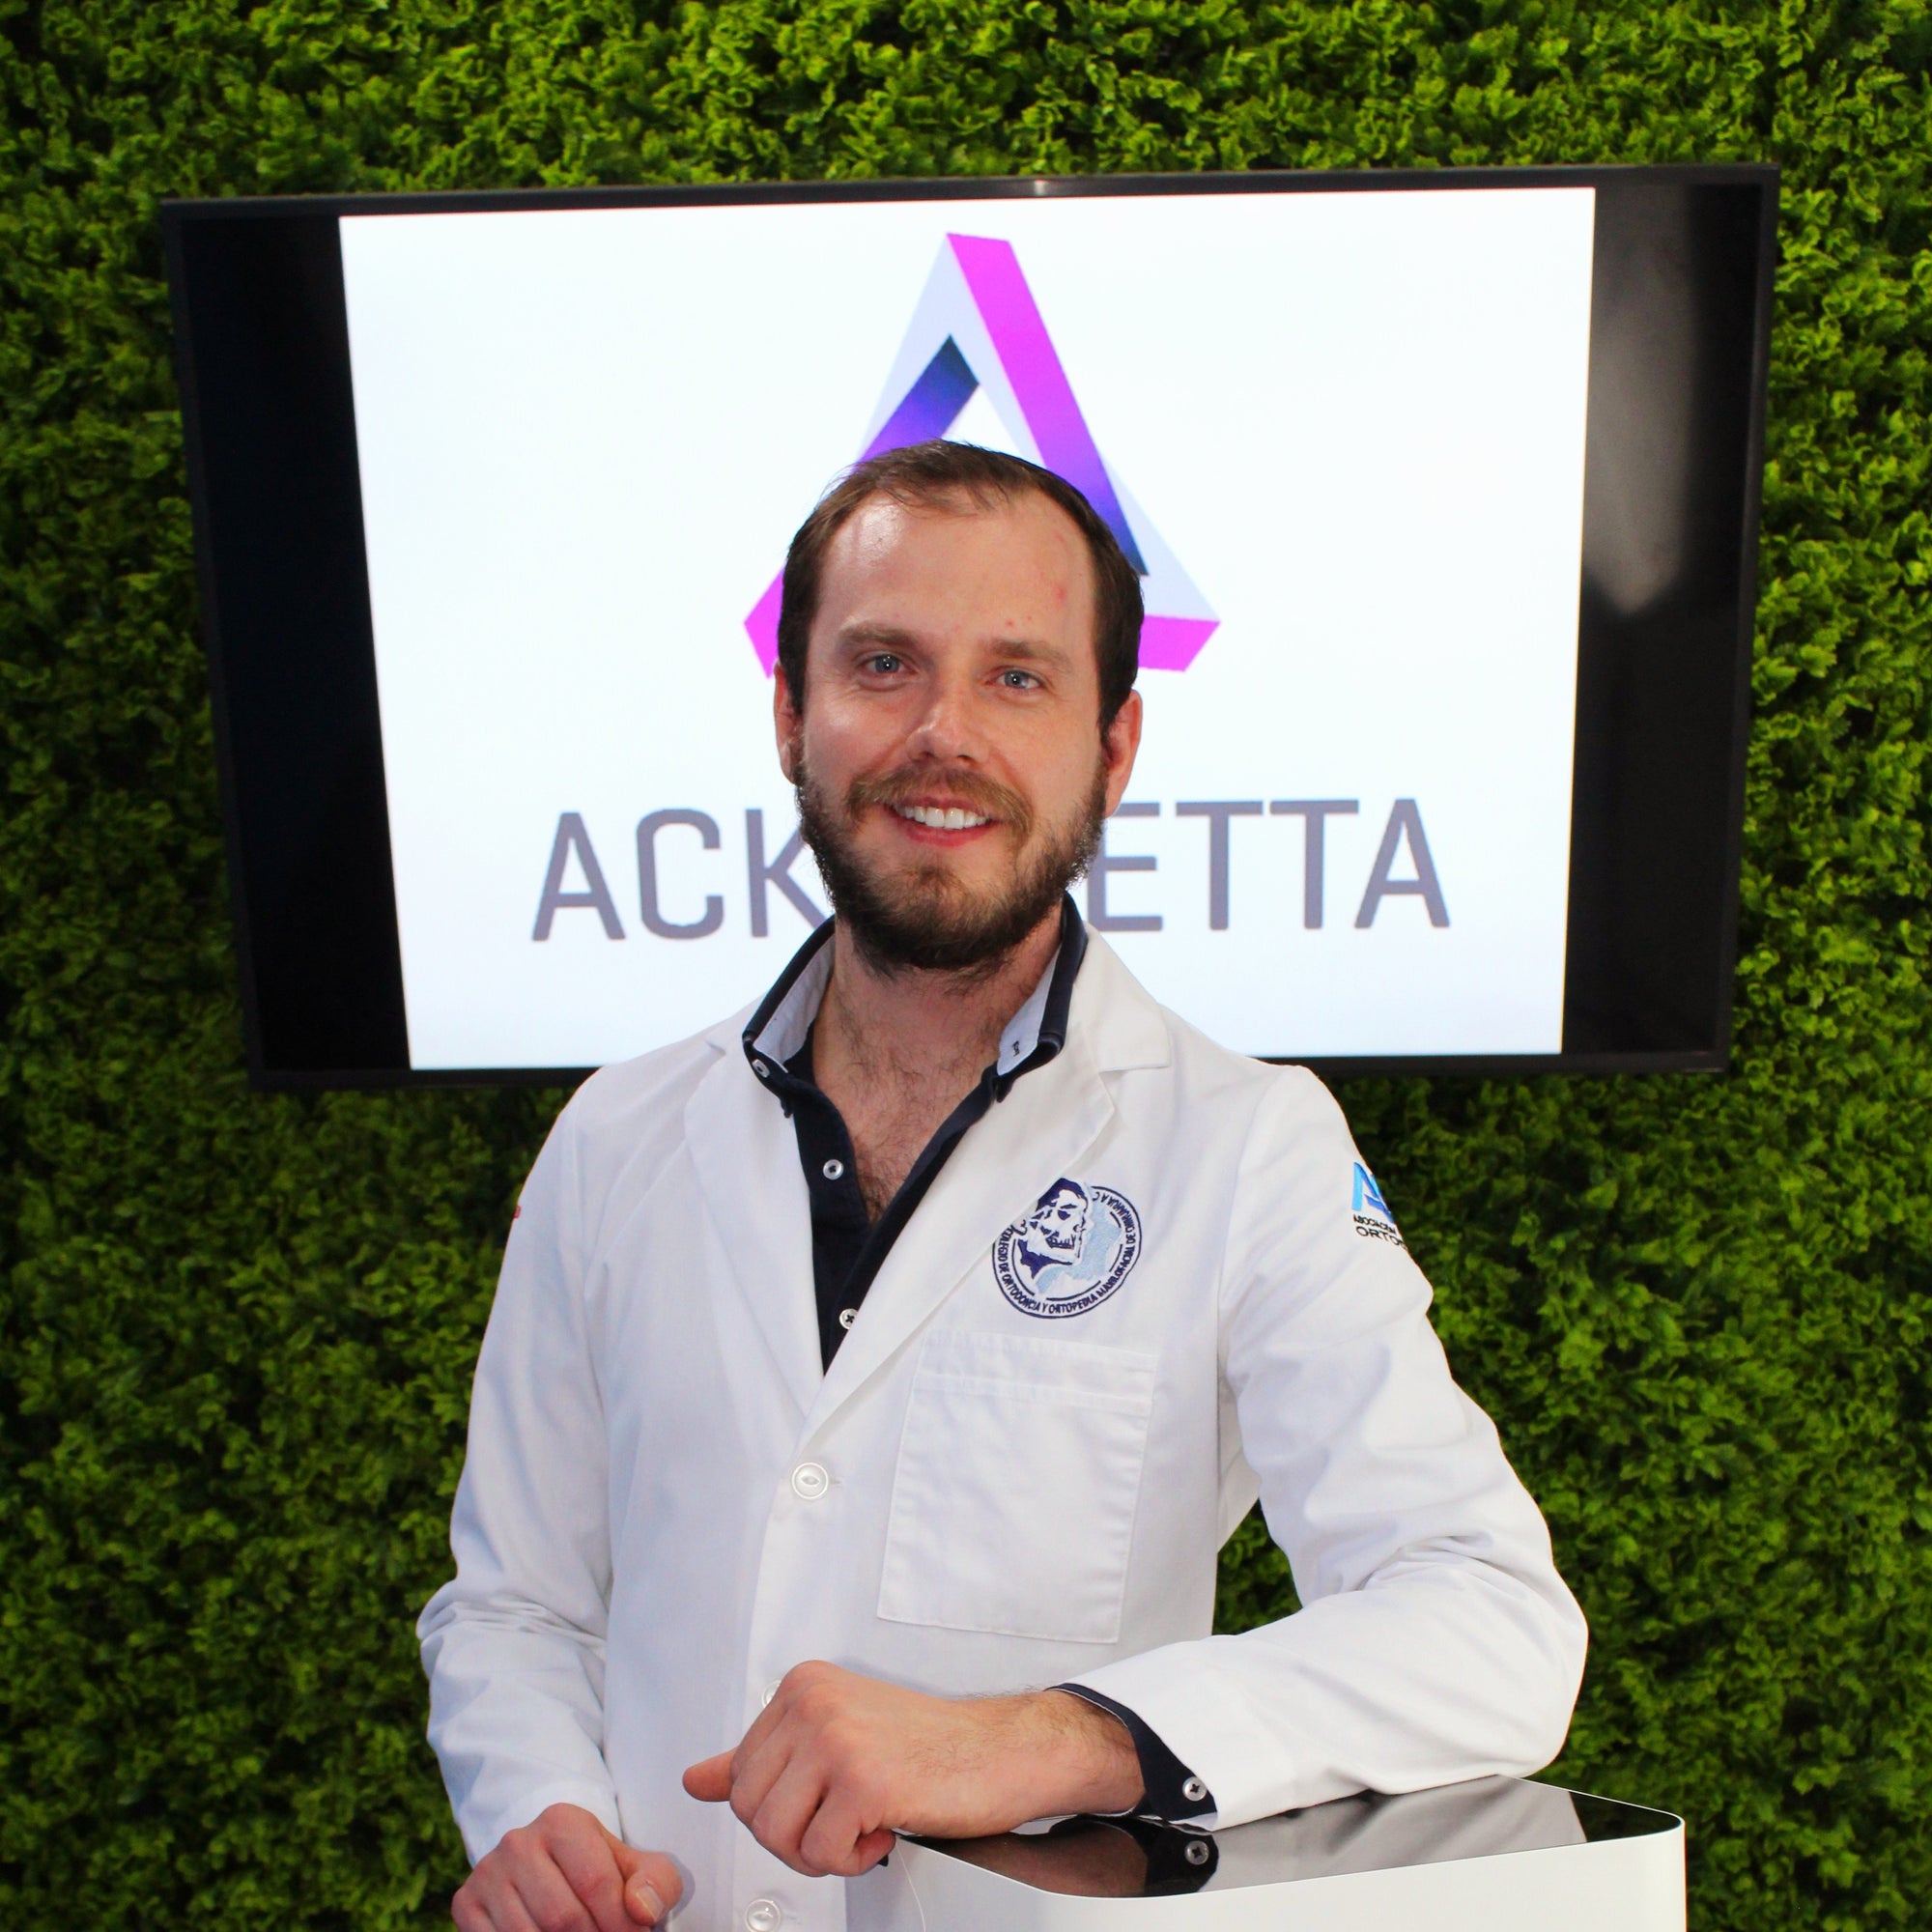 Dr. Fermin Ocanas, Orthodontist and speaker for Ackuretta